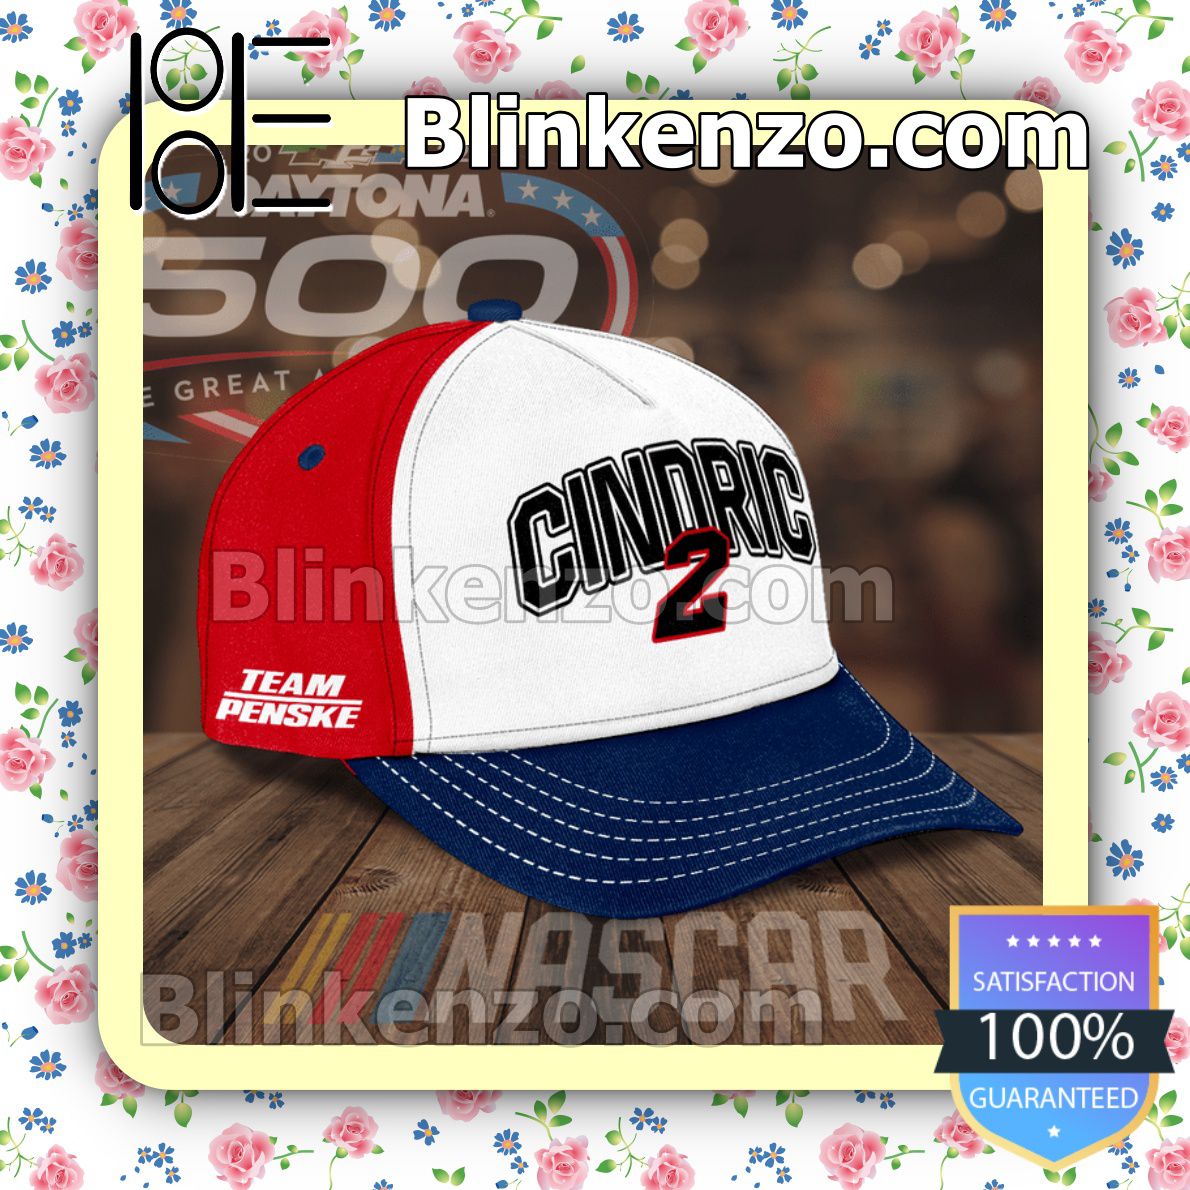 Gorgeous Nascar Daytona 500 Cindric 2 Team Penske Baseball Caps Gift For Boyfriend